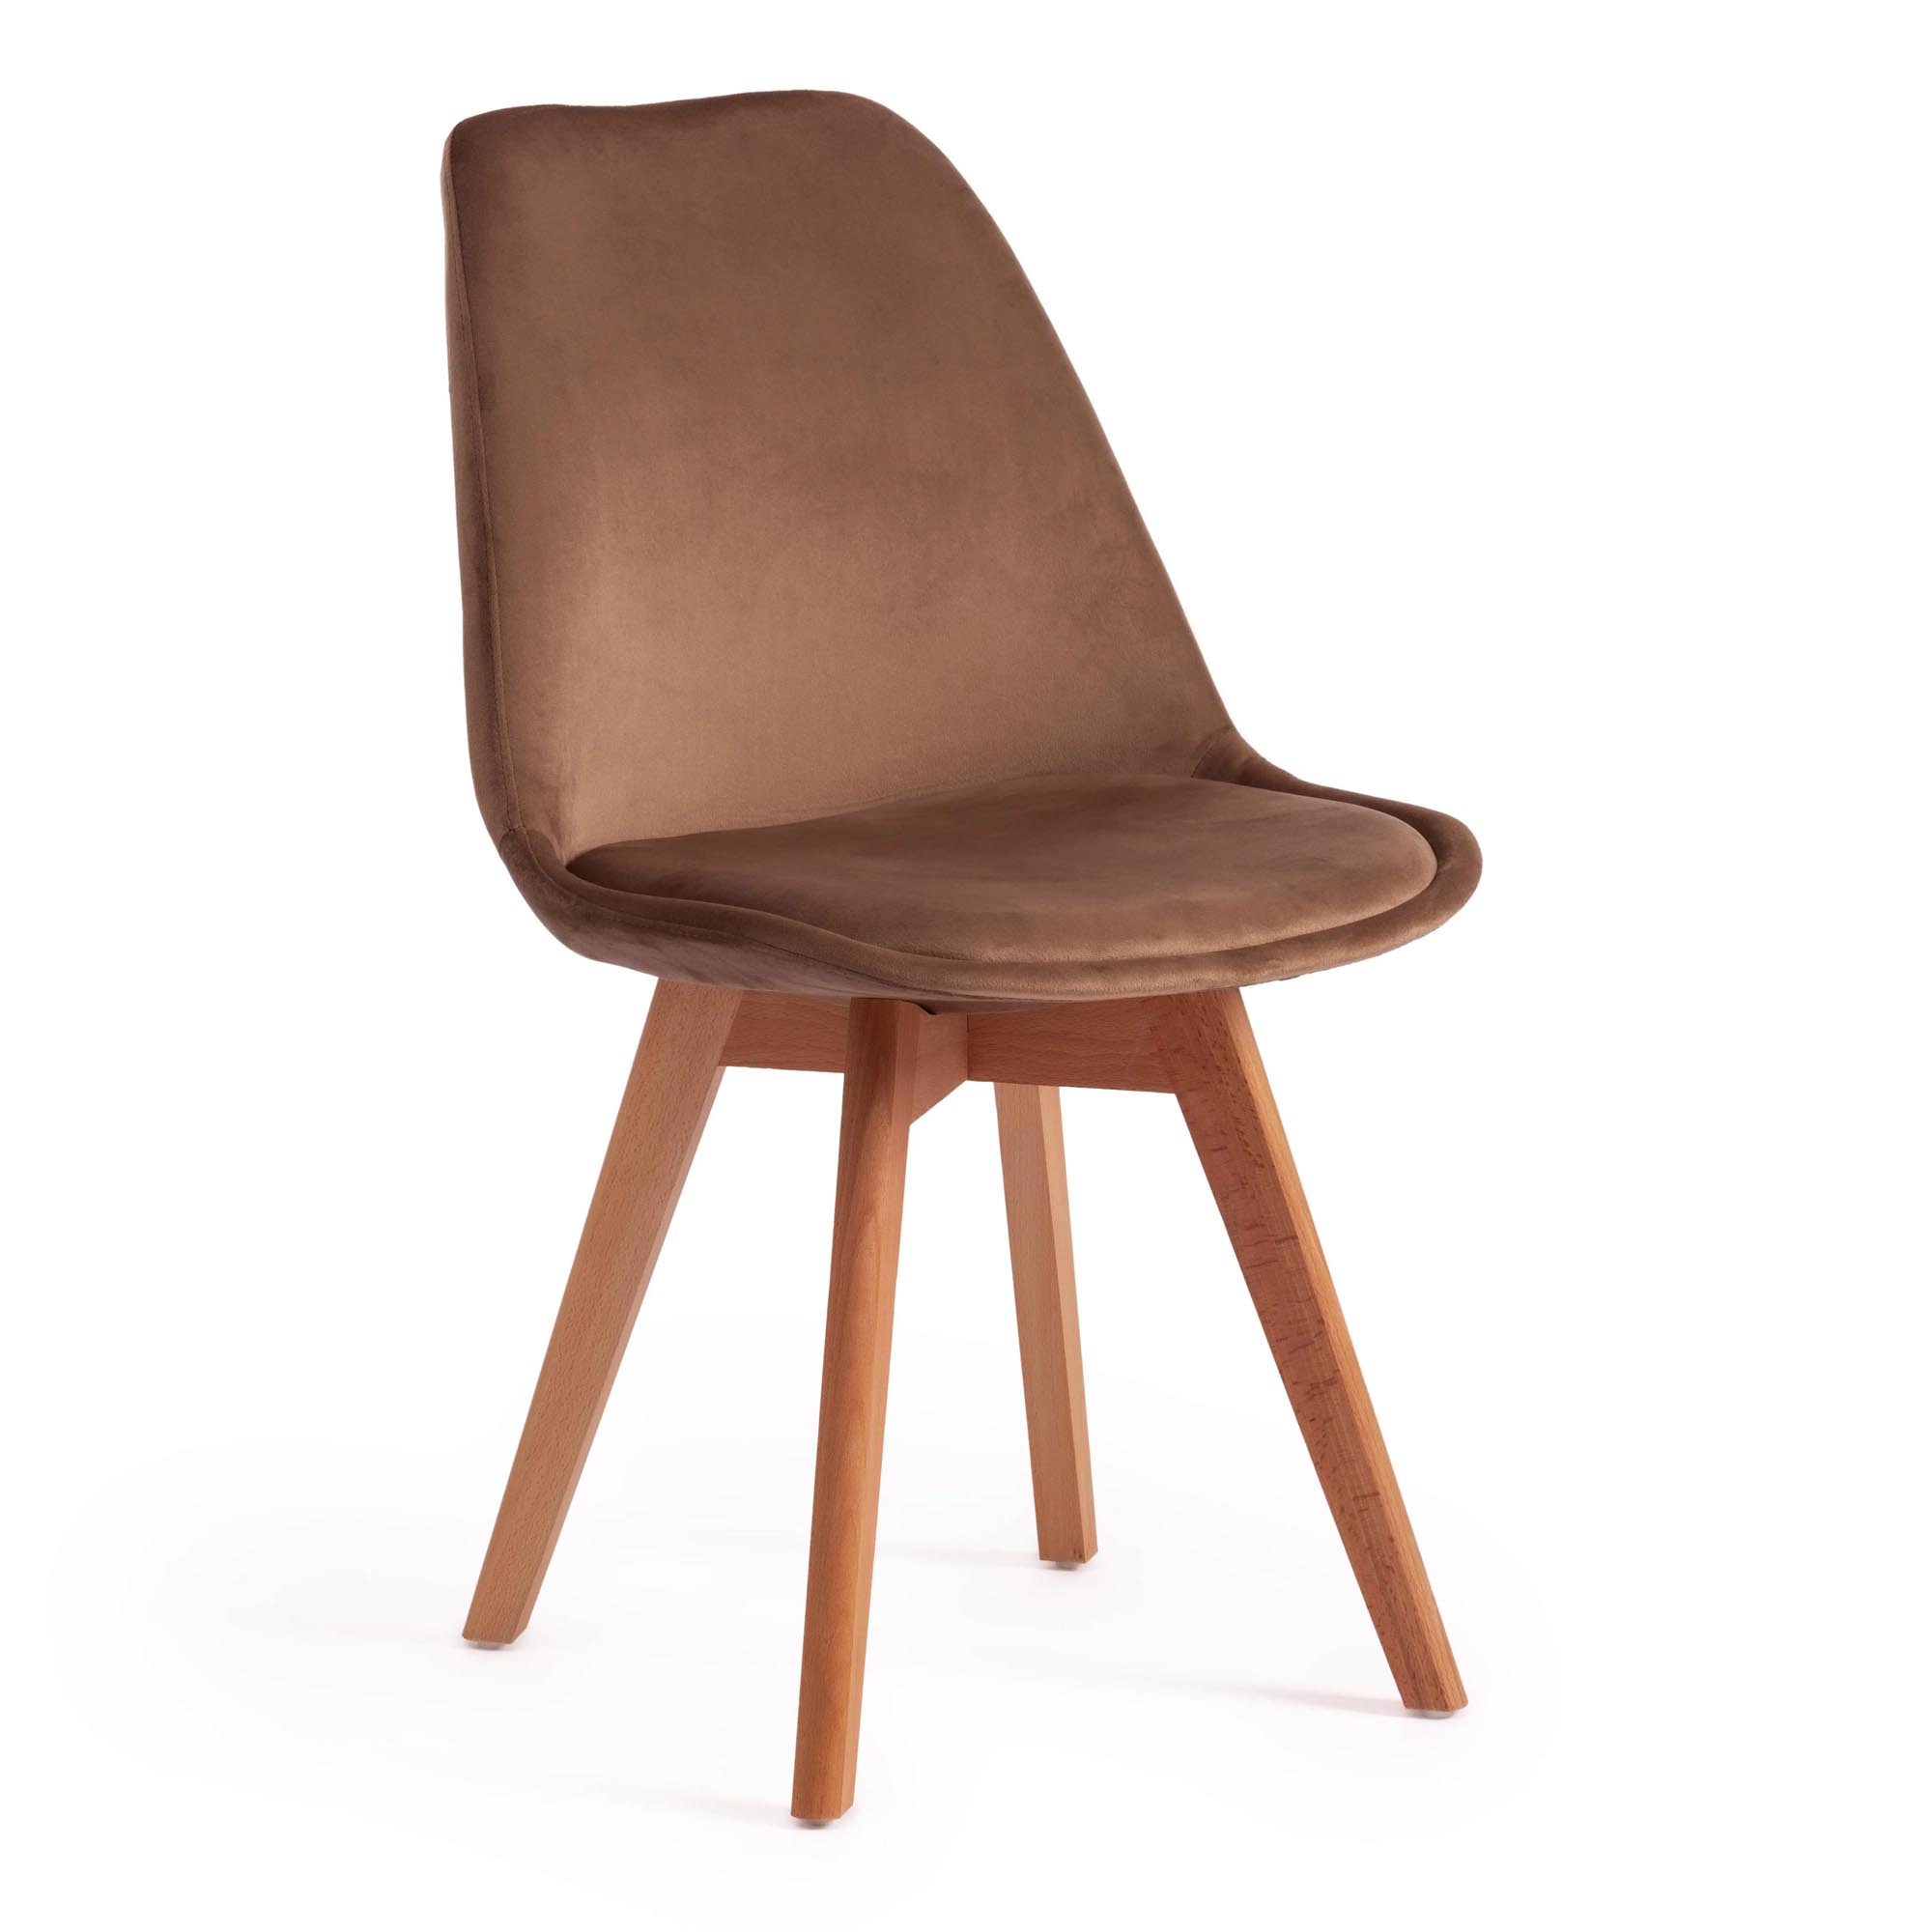 скандинавский одноместный стул из ягненка плюшевый стул для гостиной балкона роскошный дизайнерский креативный ленивый стул Стул TC Tulip Soft 54x47x83 см коричневый/натуральный